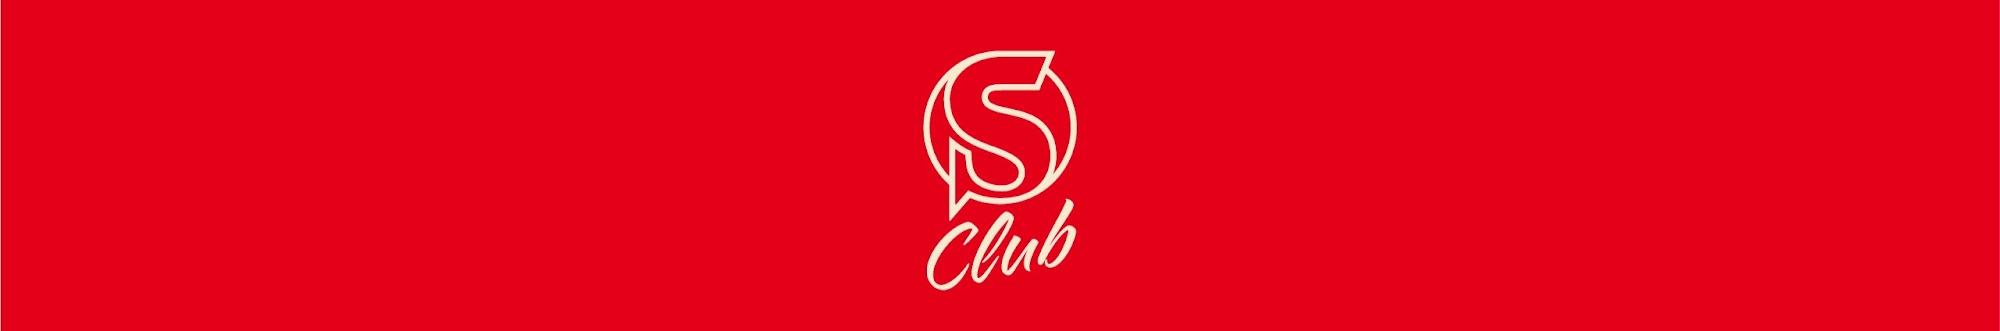 Socrates Club